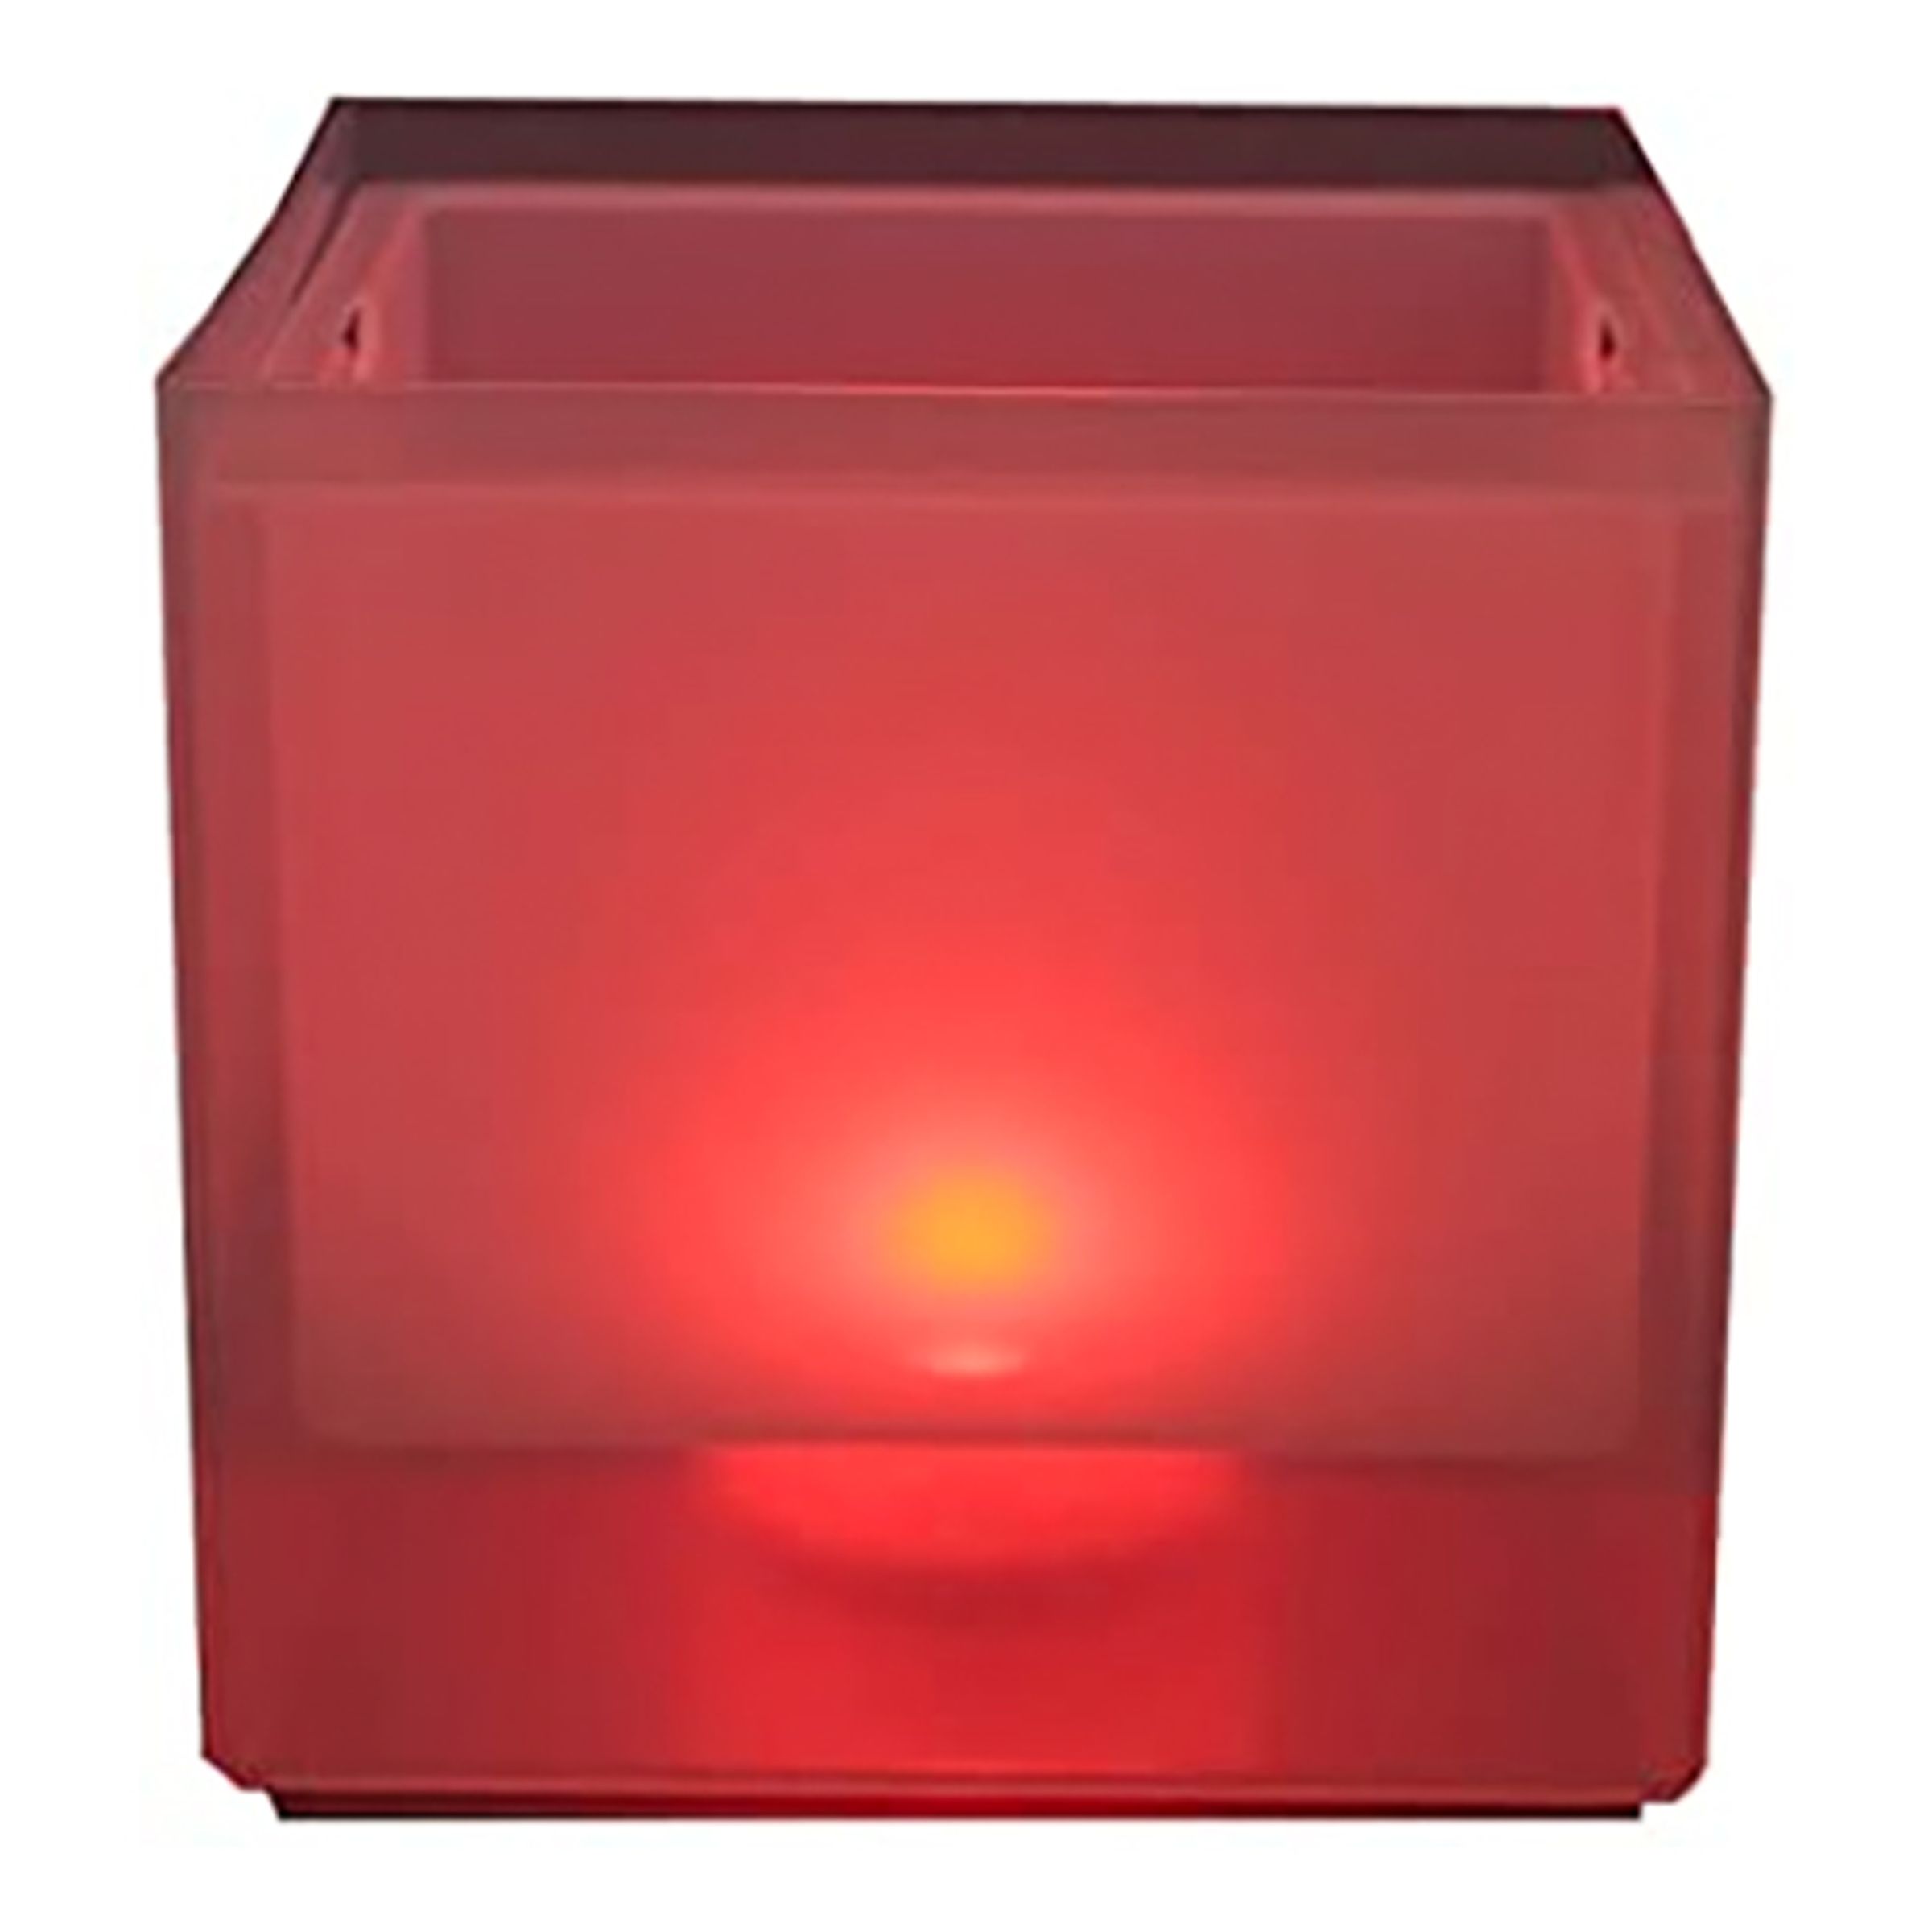 LED Ishink - Röd